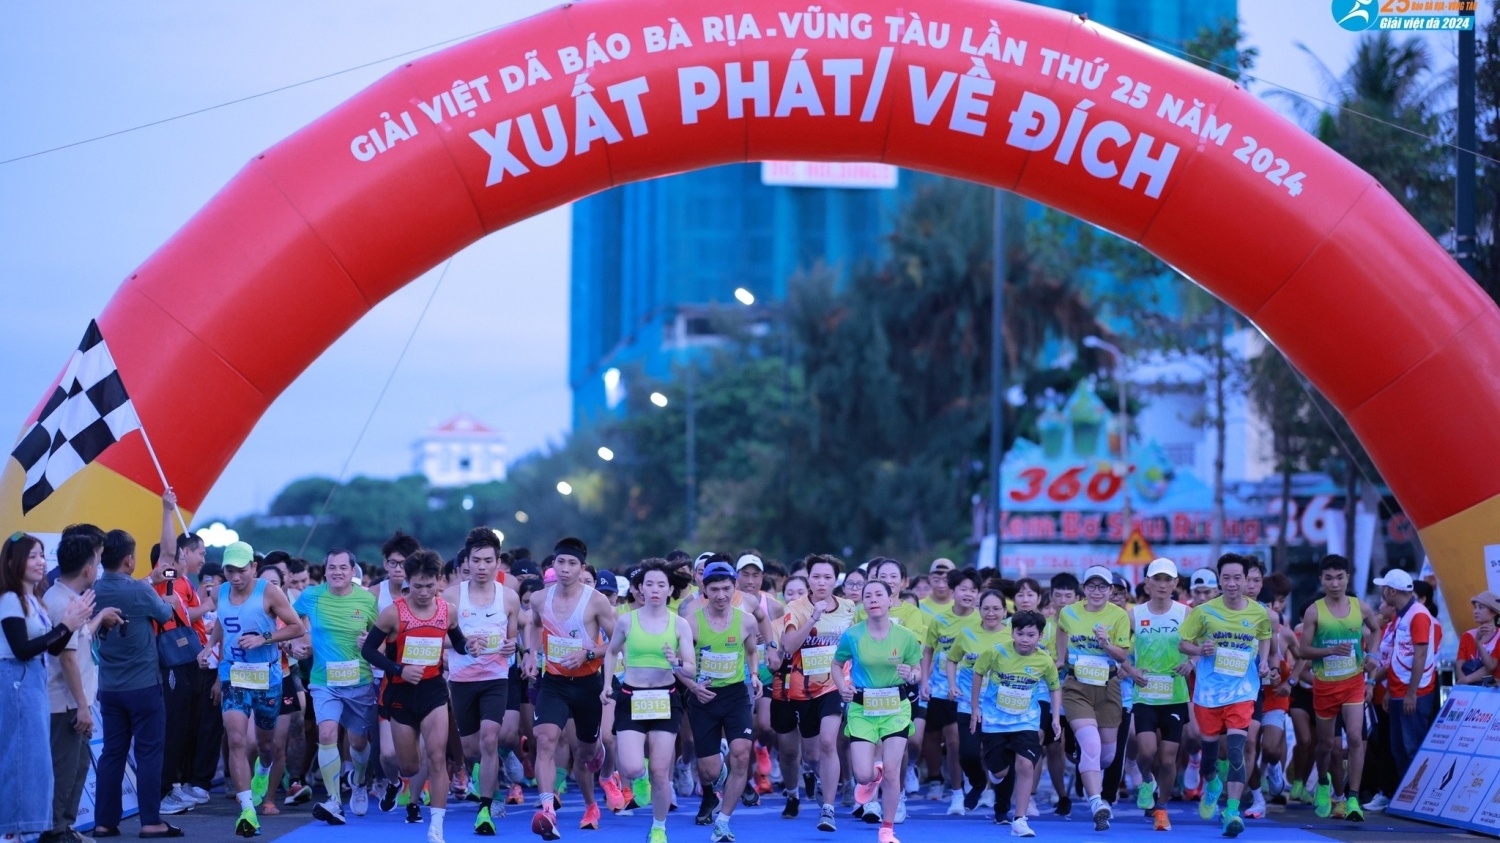 Giải Việt dã Bà Rịa - Vũng Tàu lần thứ 25 thu hút hơn 3.000 vận động viên tham gia